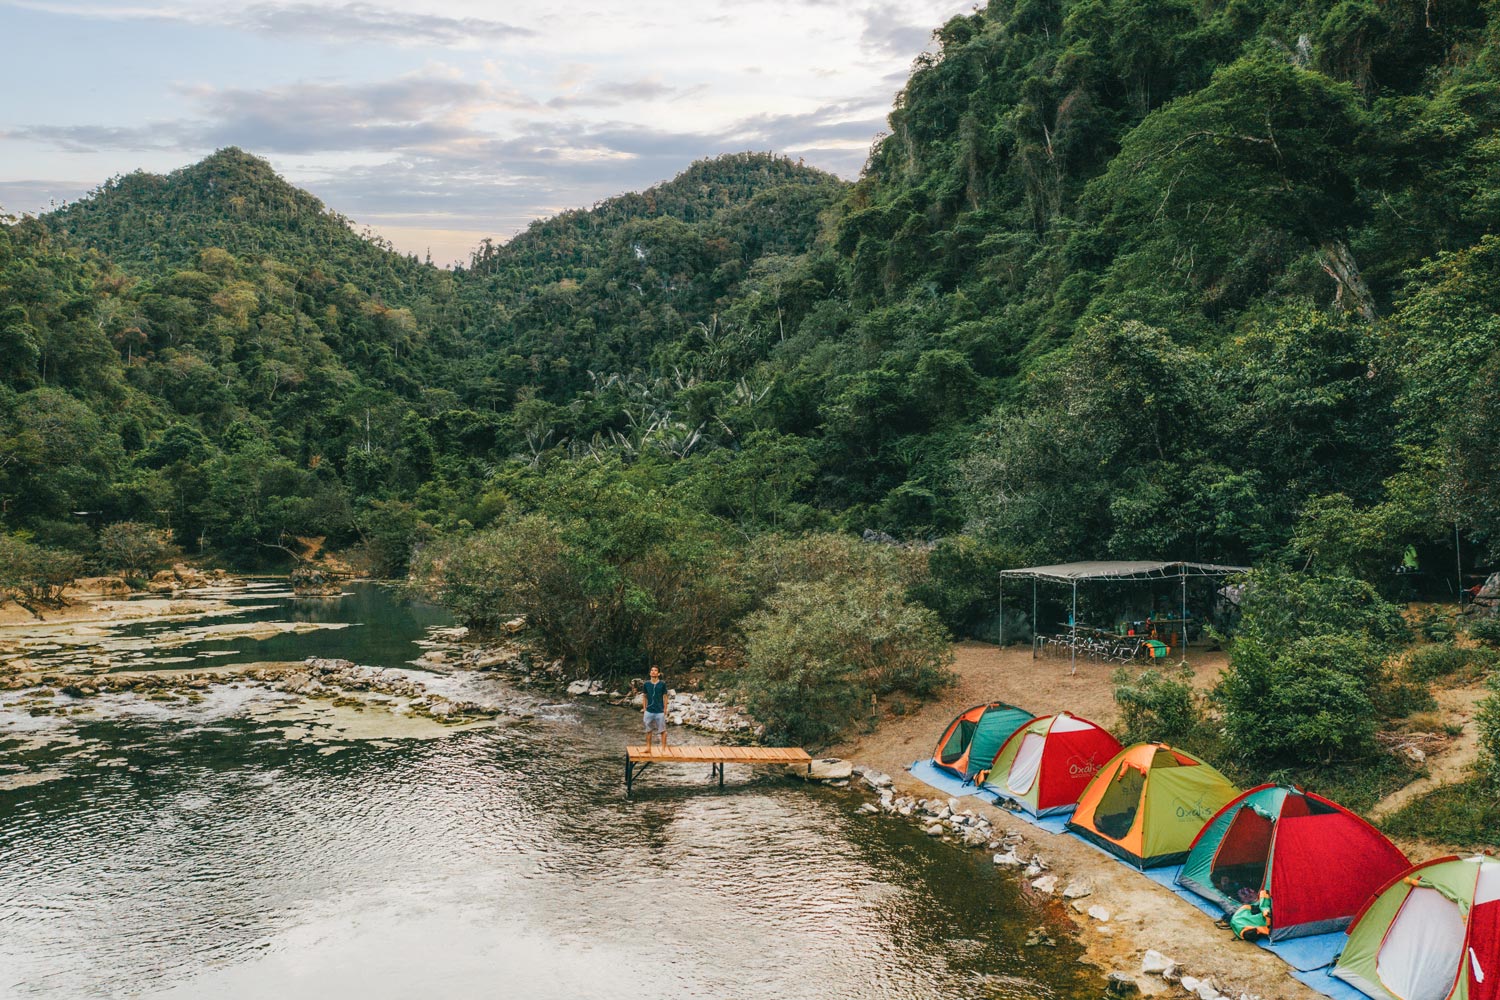 Toàn cảnh khu cắm trại Hang Tiên - một trong những khu cắm trại đẹp nhất tại khu vực Tú Làn - Hang Tiên.